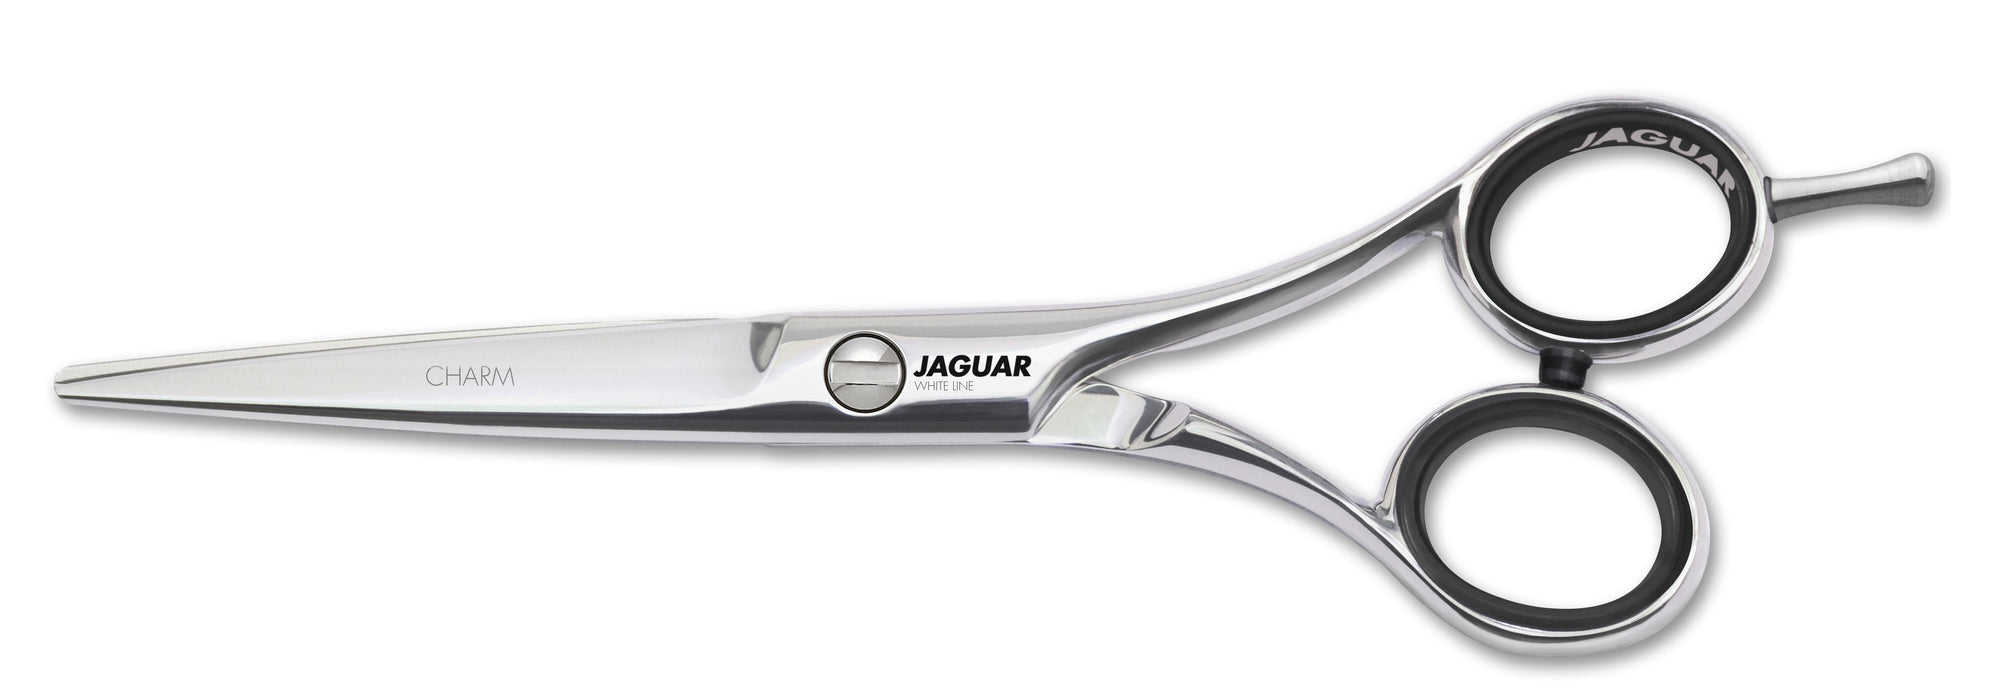 Jaguar Charm (4397224722515)